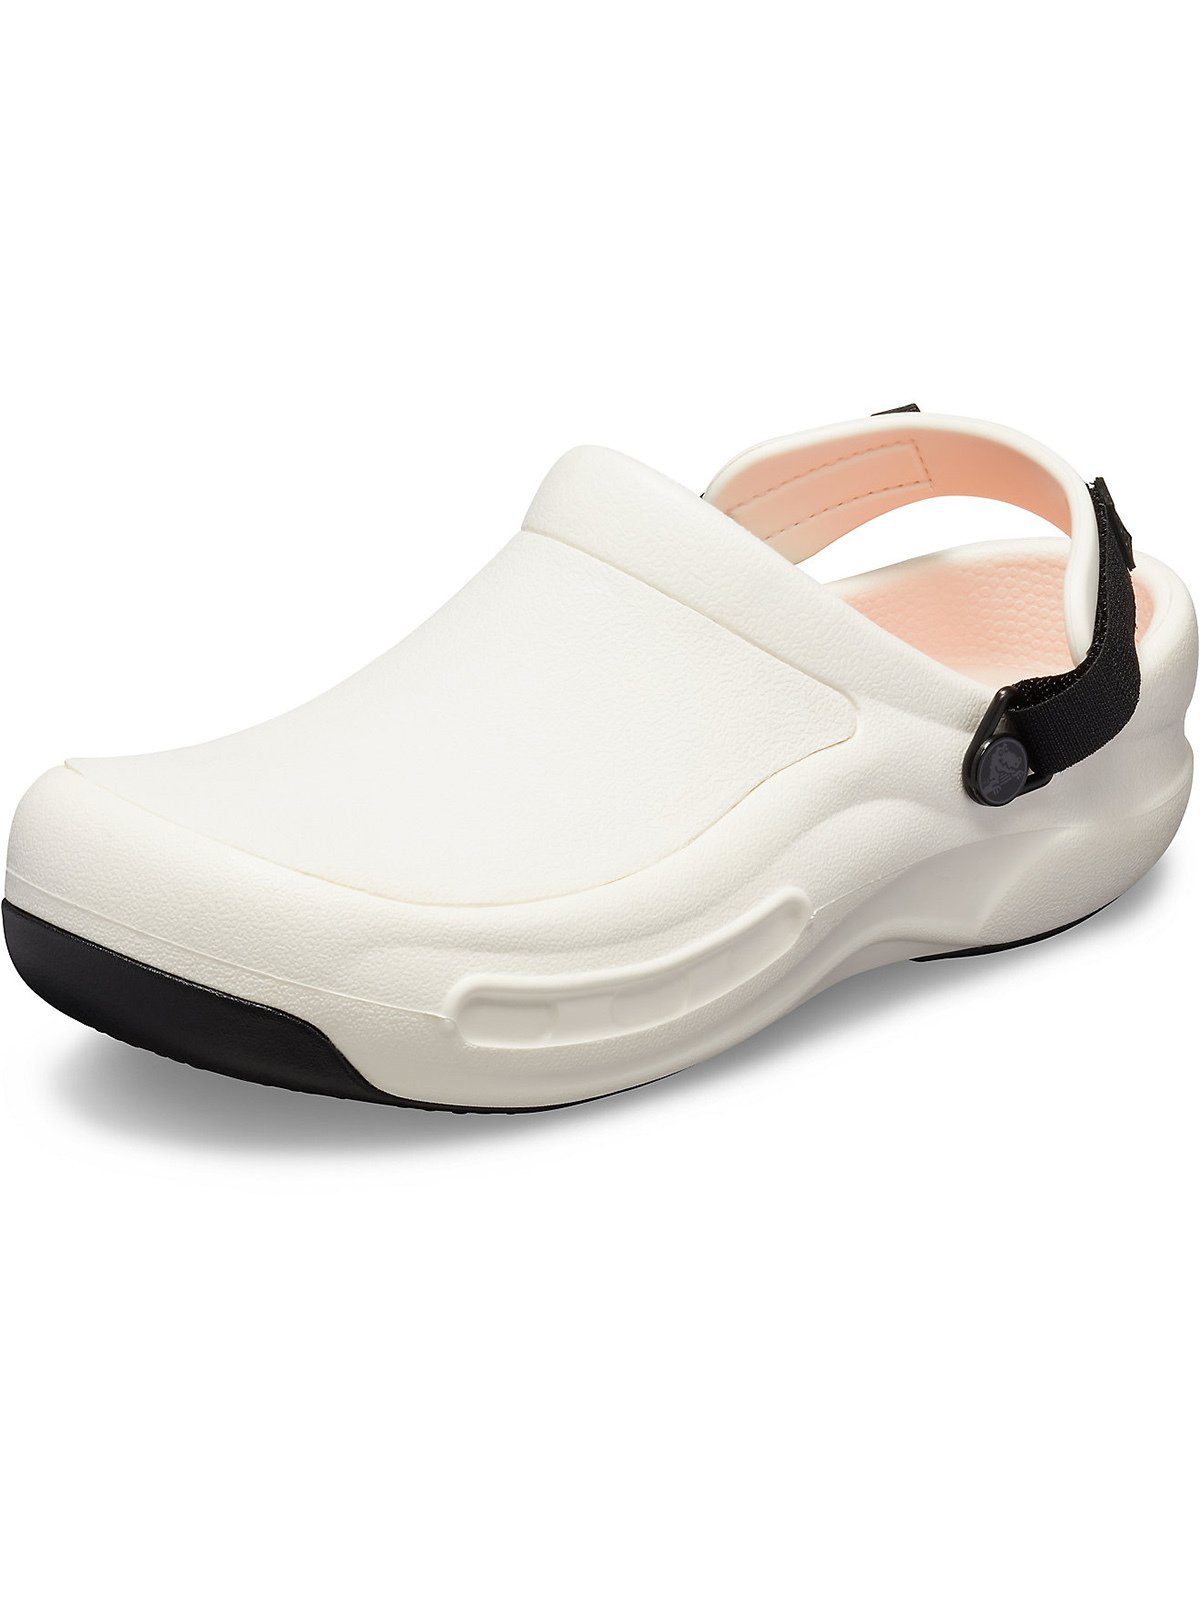 Vorgeformtes Crocs LiteRide™ Laufsohle, Bistro Pro Berufsschuh antirutsch mit Fußbett Clog